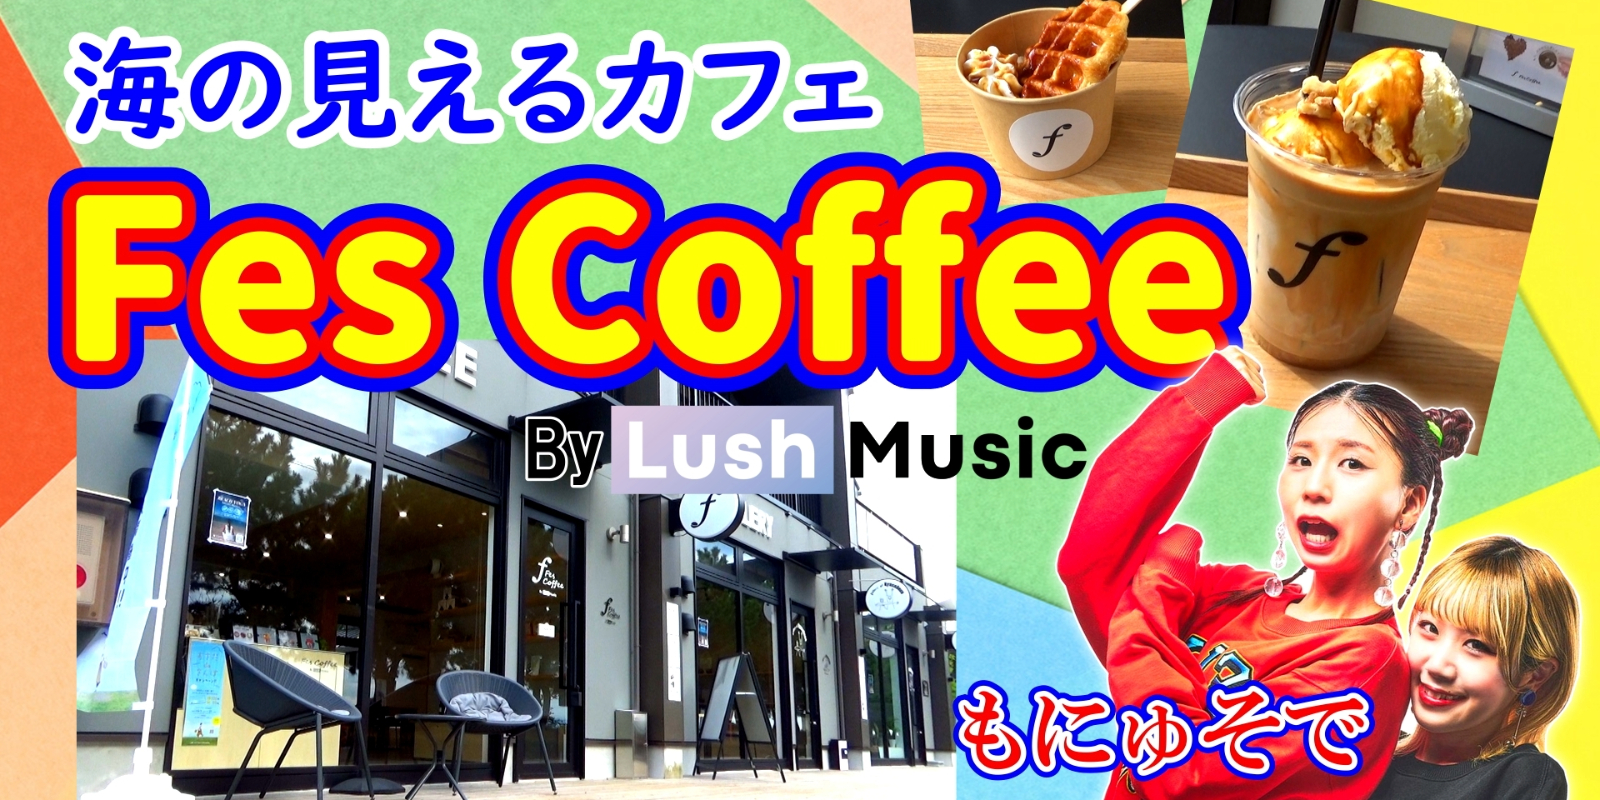 海の見えるカフェ「Fes Coffee By Lush Music」